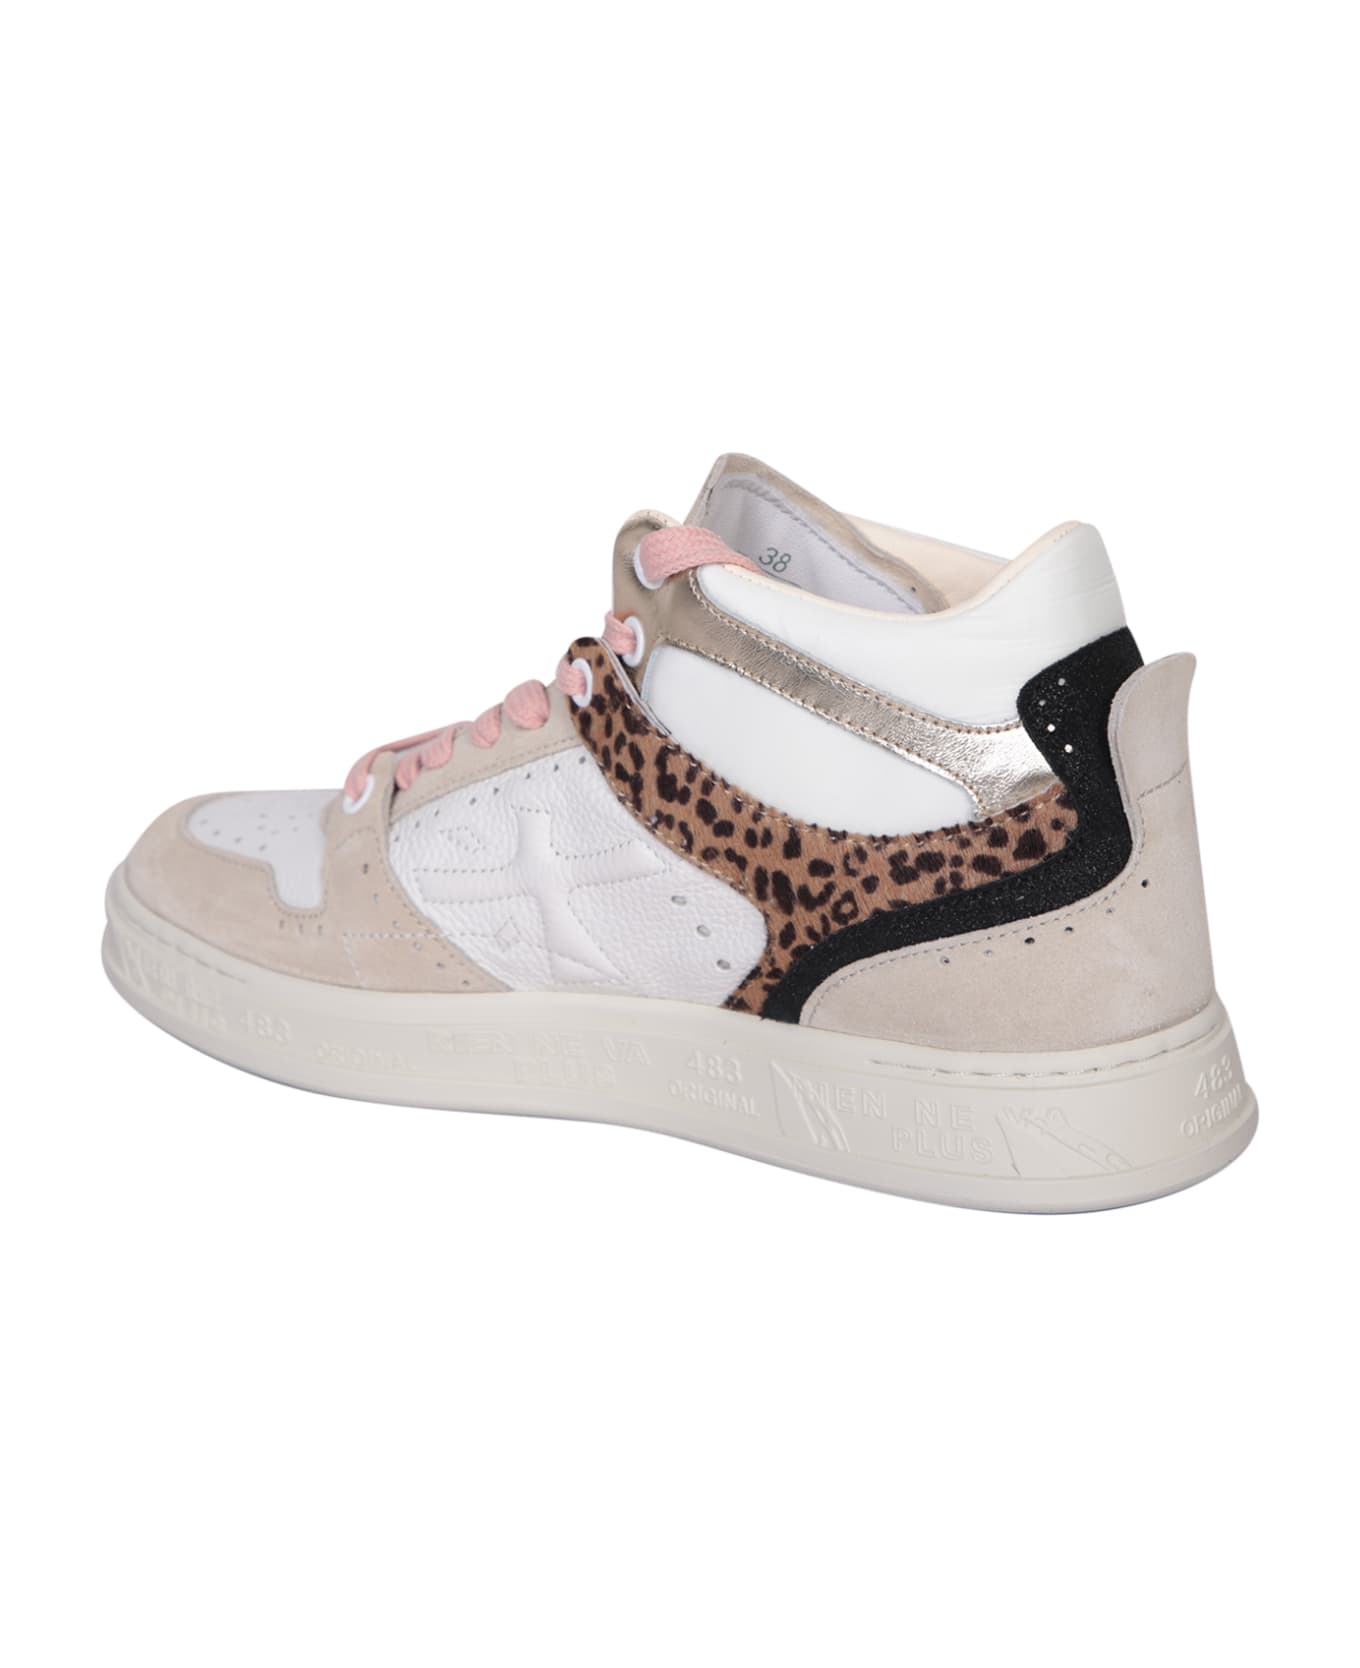 Premiata Midquinnd Leopard/white Sneakers - White